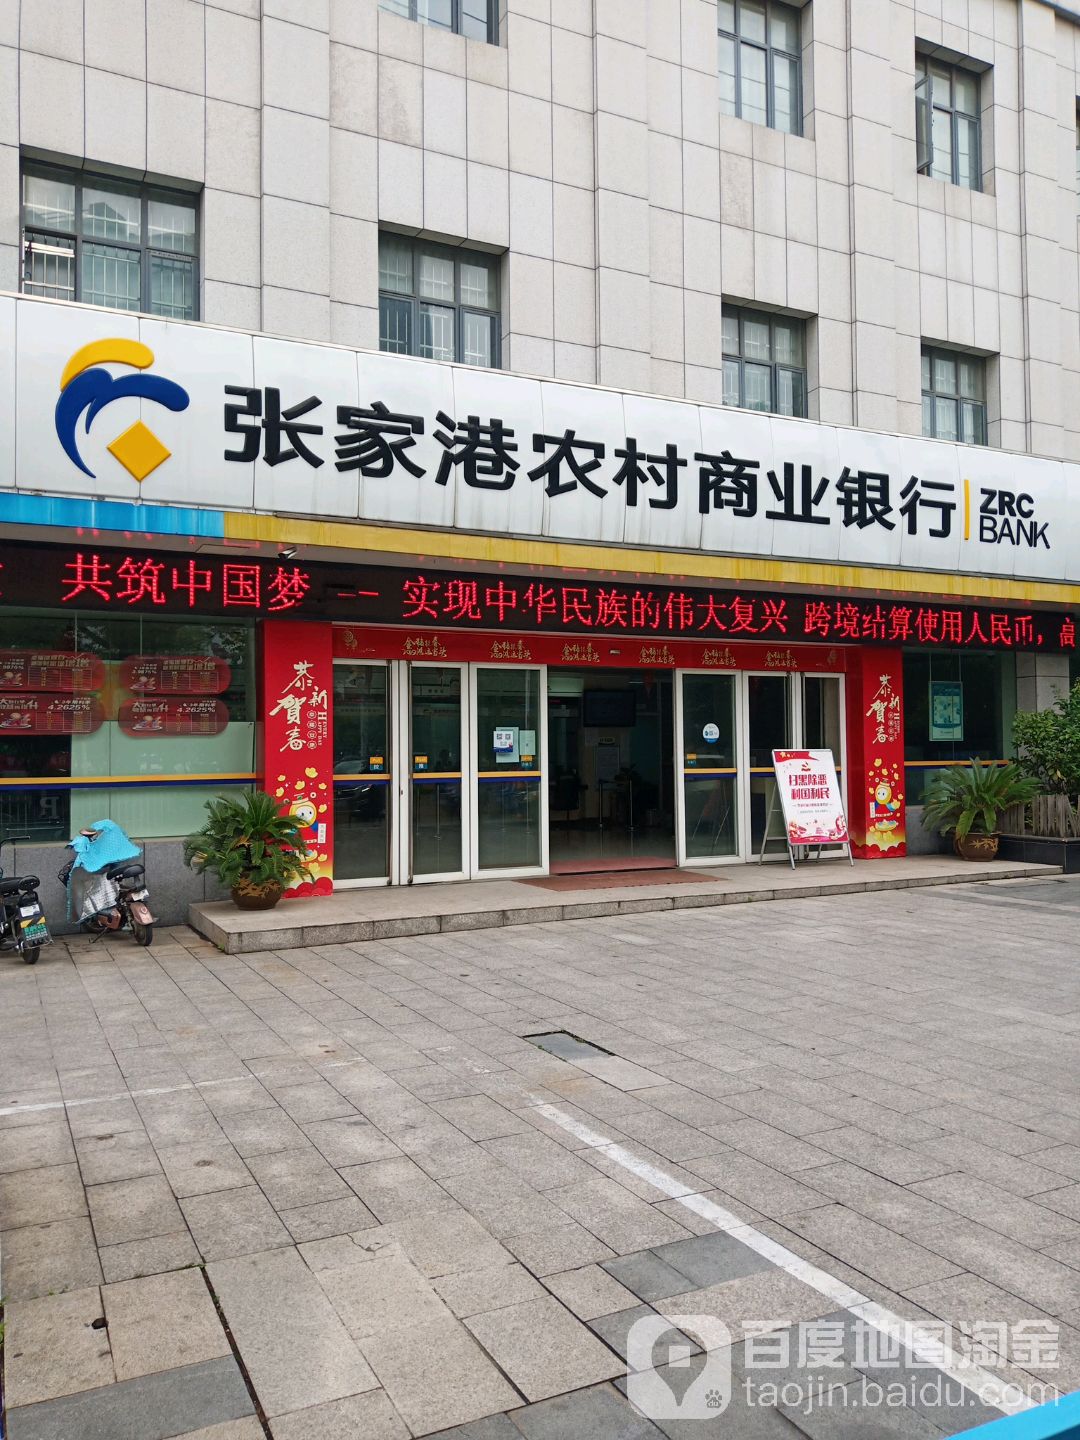 張家港農村商業銀行24小時自助銀行(丹陽支行)